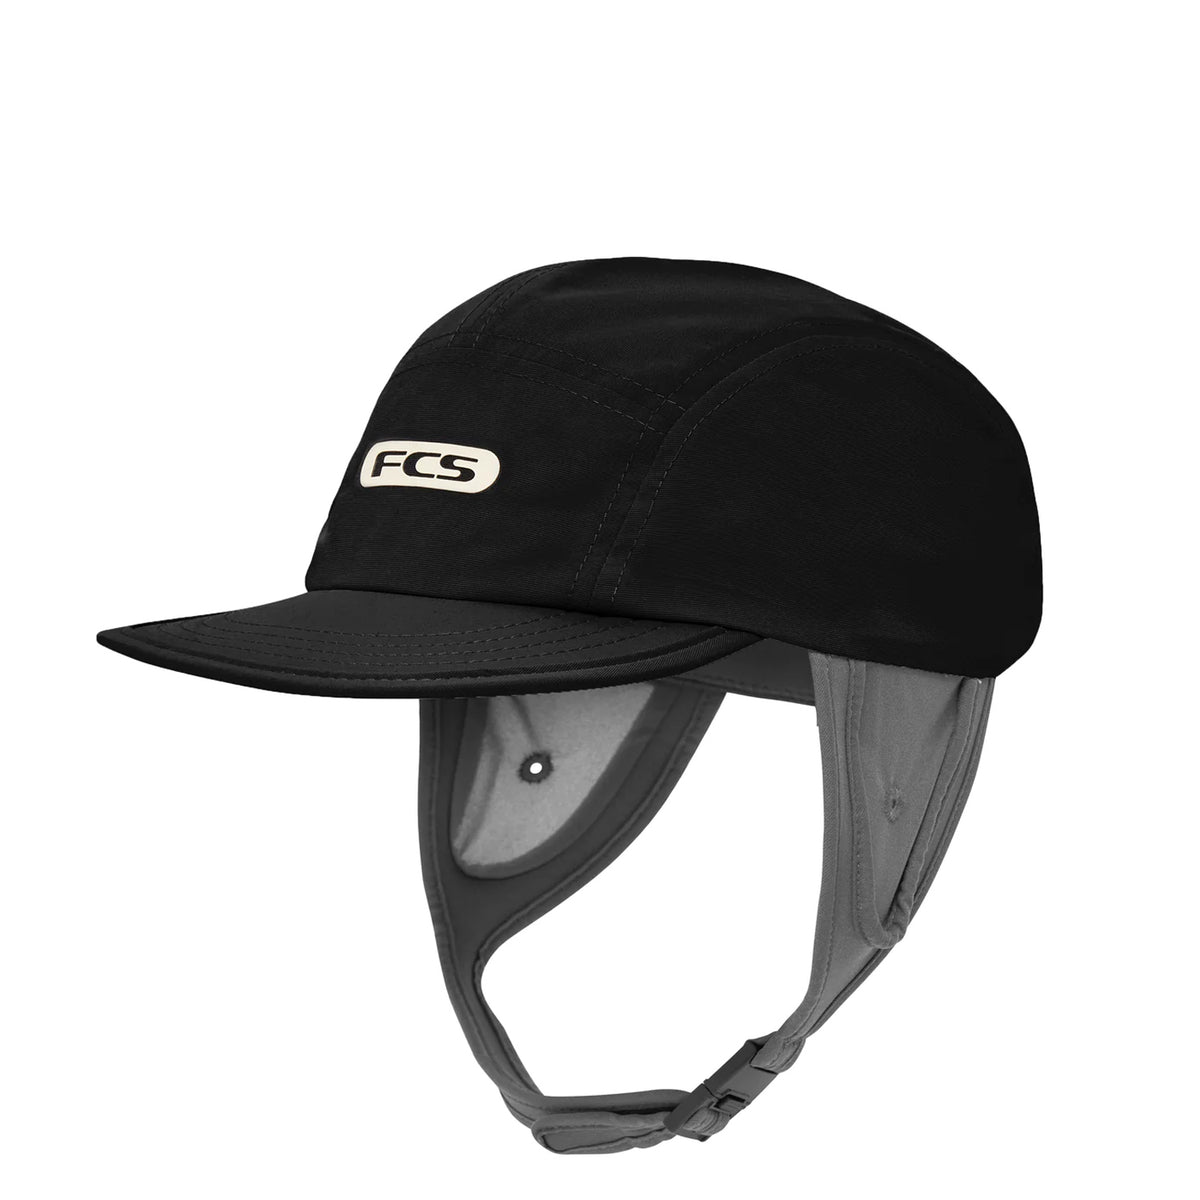 FCS - ESSENTIAL SURF CAP BLACK